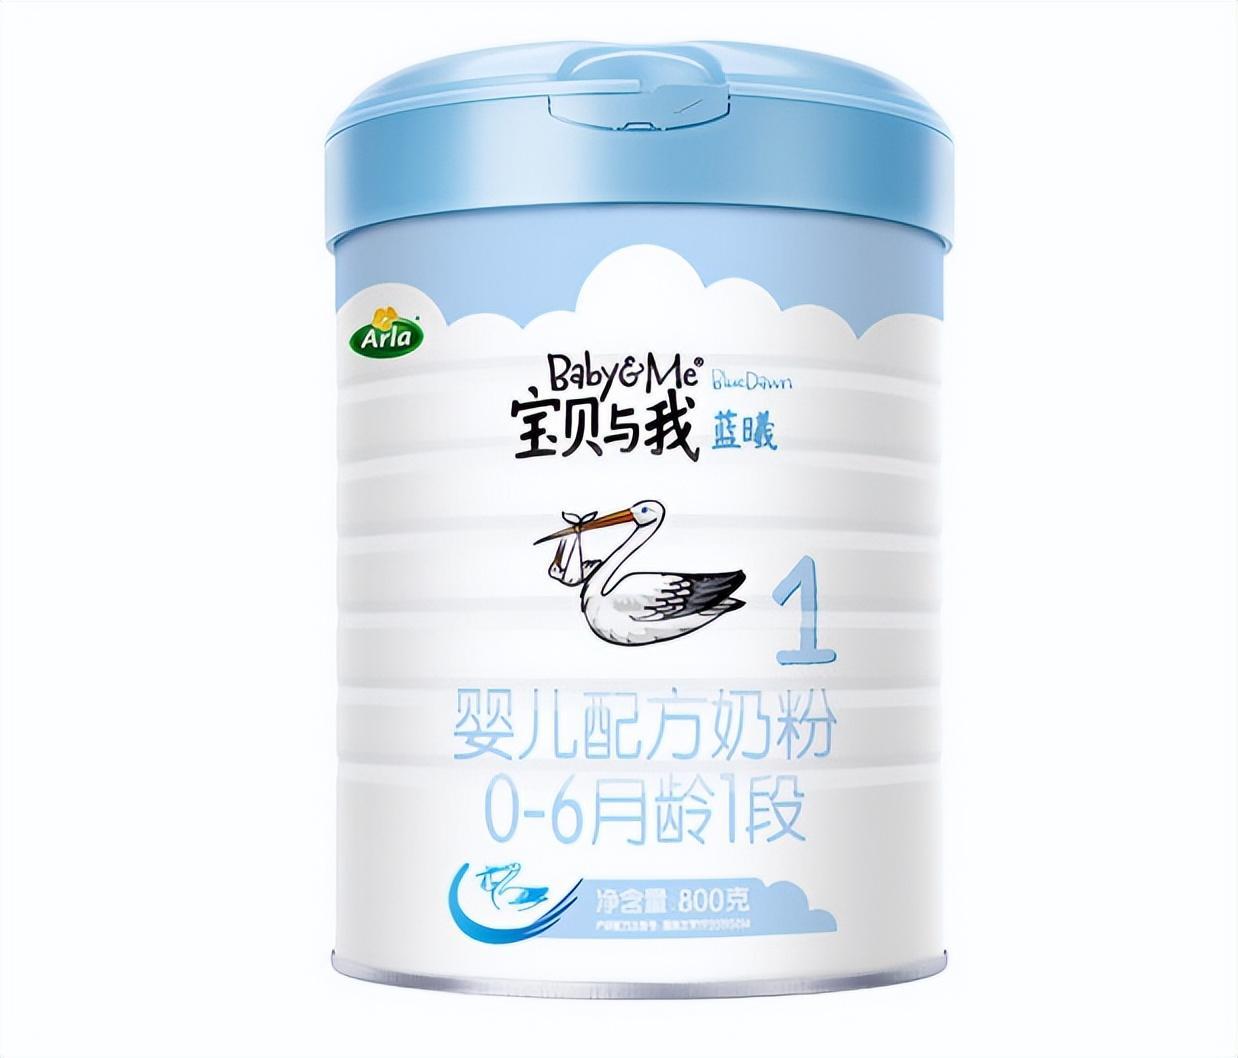 优博58奶粉 向最纯真的母爱致敬 - 企业 - 中国产业经济信息网